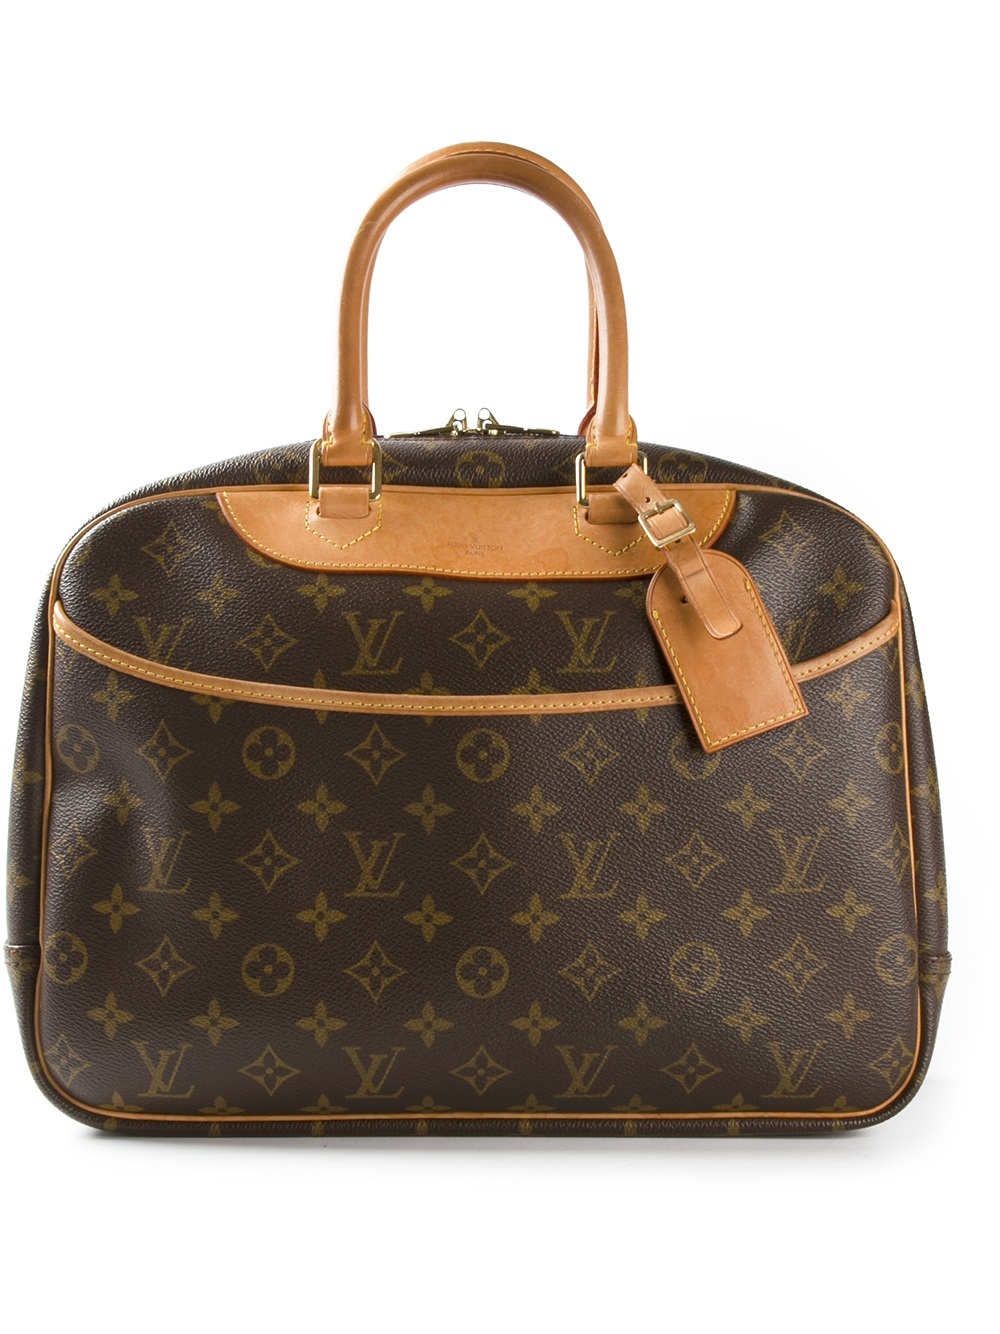 Lyst - Louis Vuitton Deauville Handbag in Brown